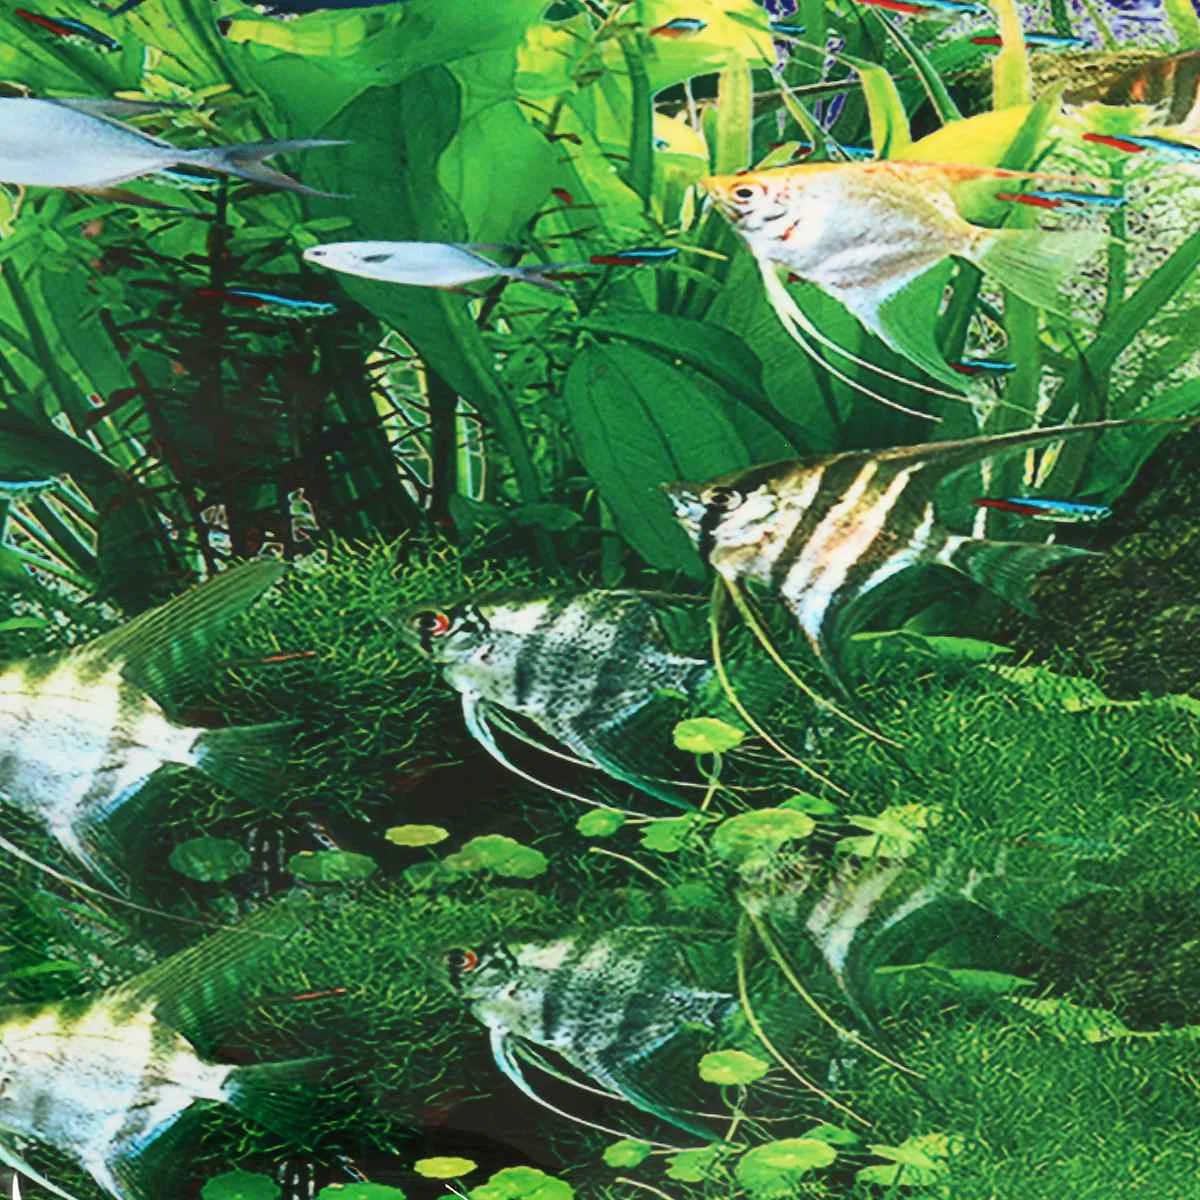 HD аквариум обои самоклеющиеся аквариум фон плакат Аквариум Ландшафтный фон декоративные наклейки с росписью ПВХ